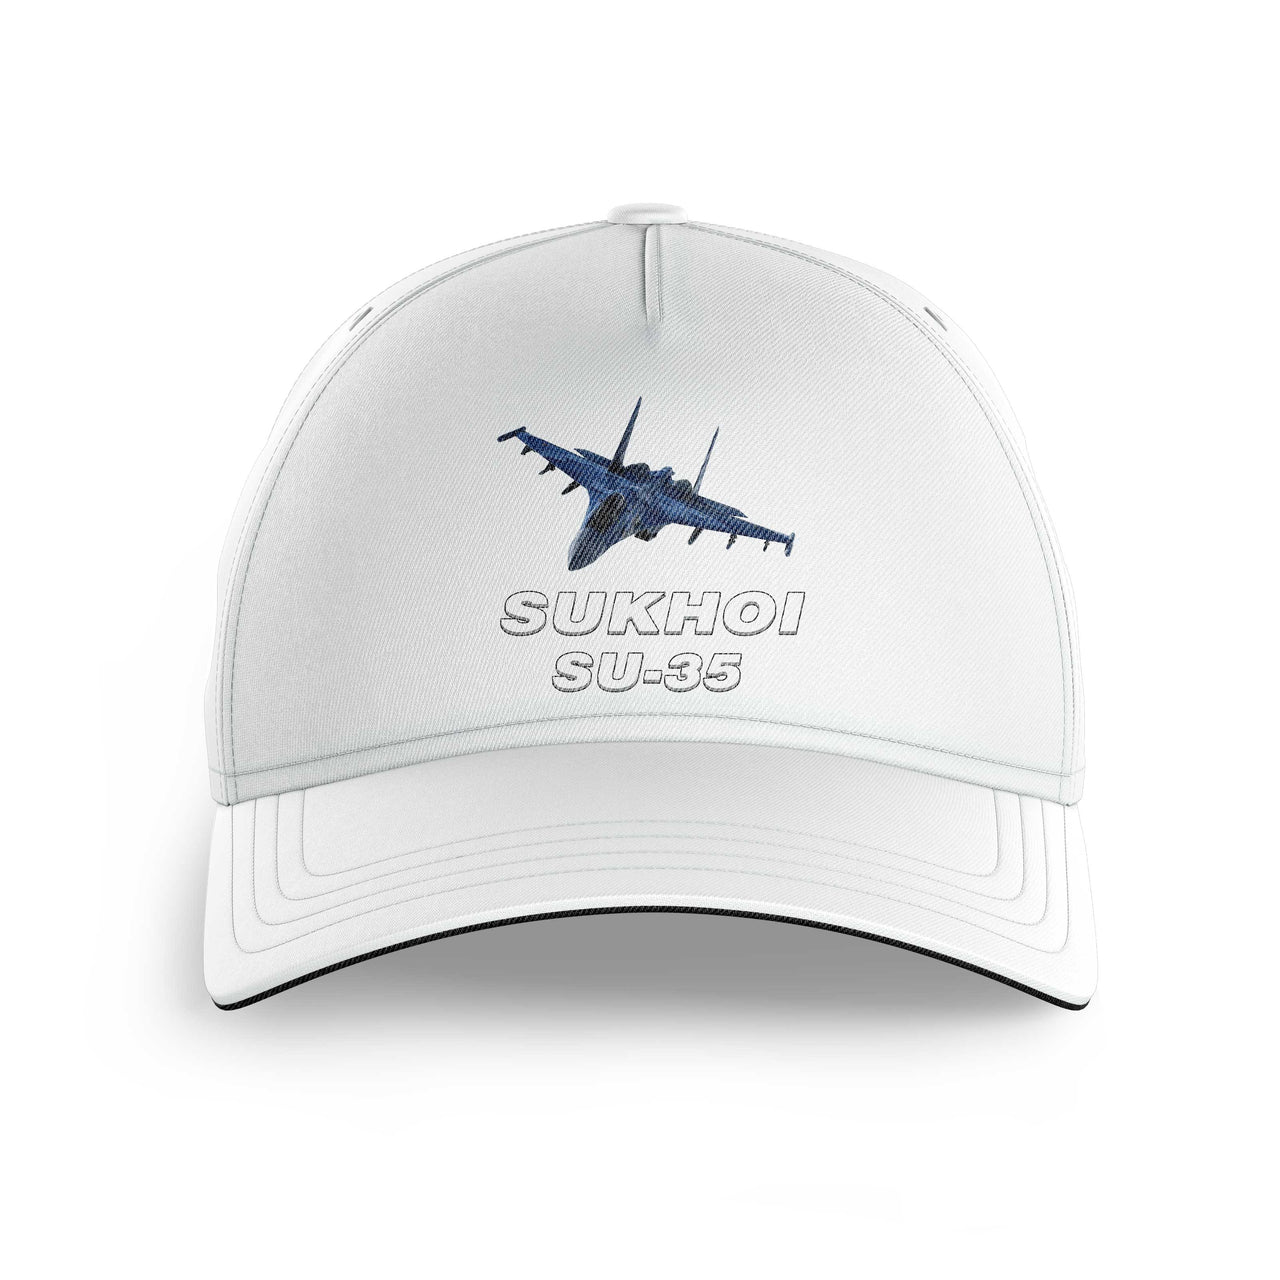 The Sukhoi SU-35 Printed Hats